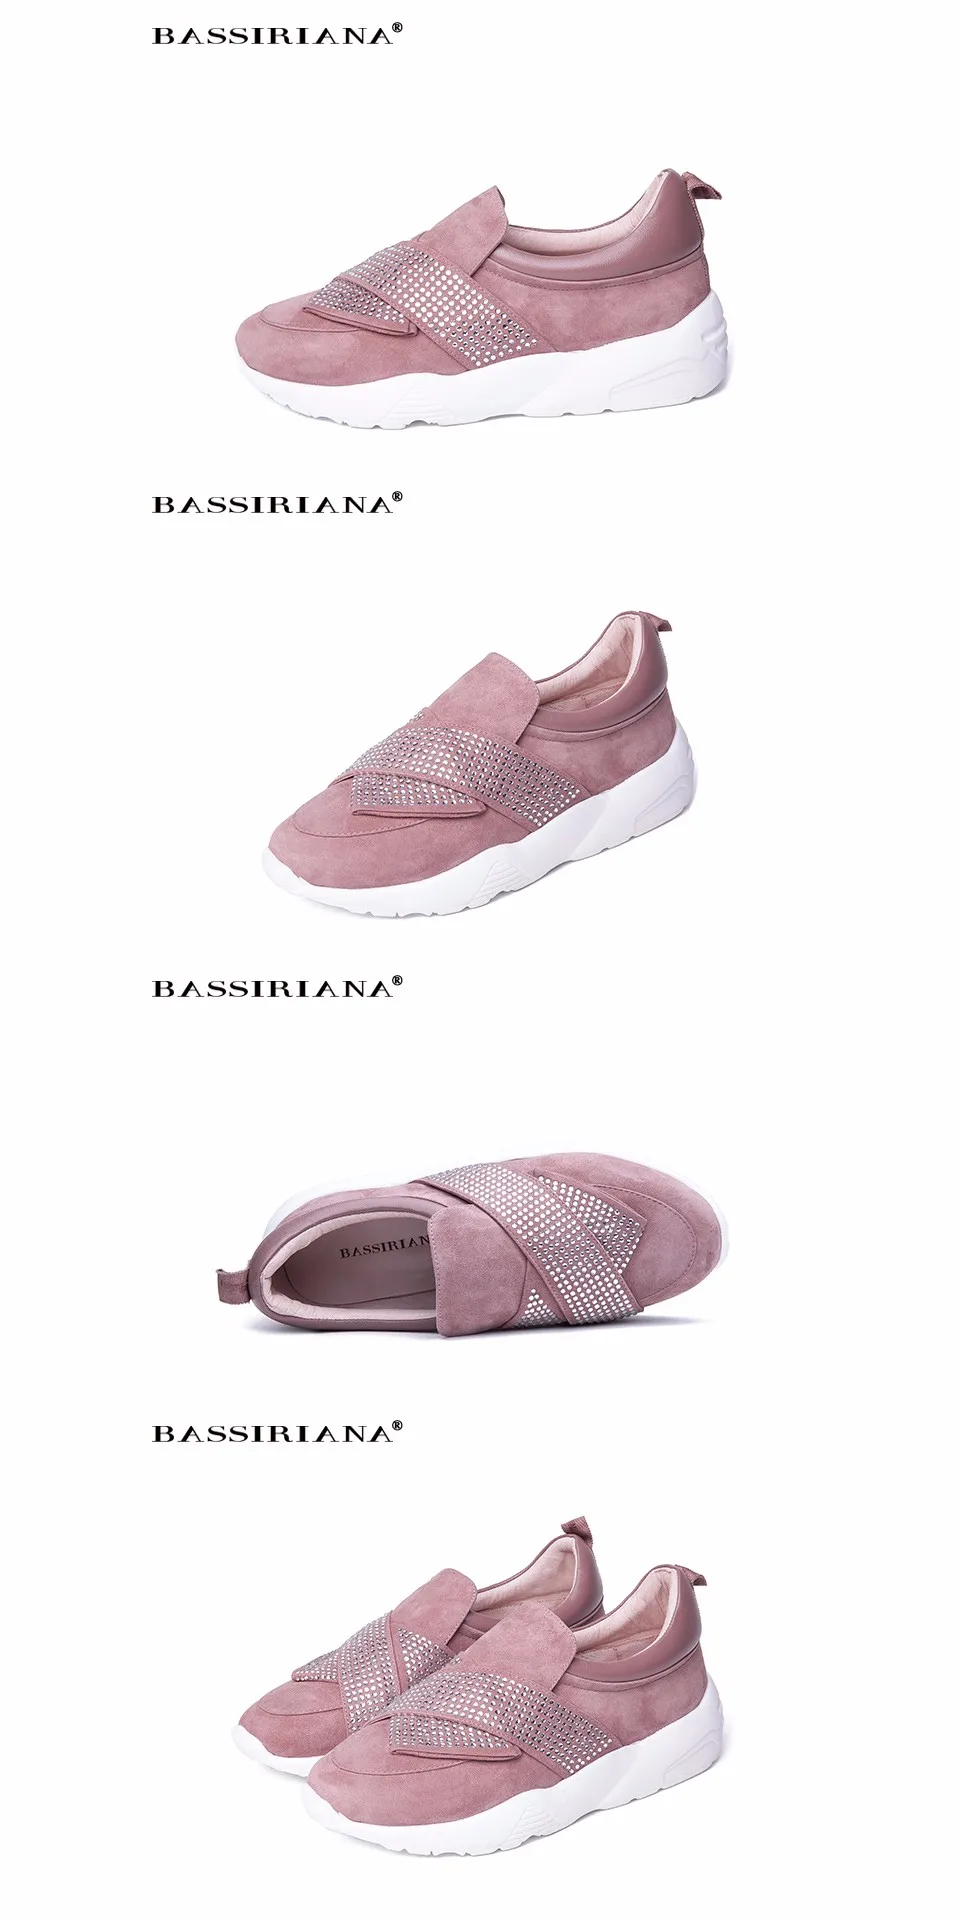 Bassiriana/Новые Натуральная кожа повседневная обувь на плоской подошве женская обувь на платформе без шнуровки белая подошва черный розовый цвета хаки Весна-осень 35-40 размер